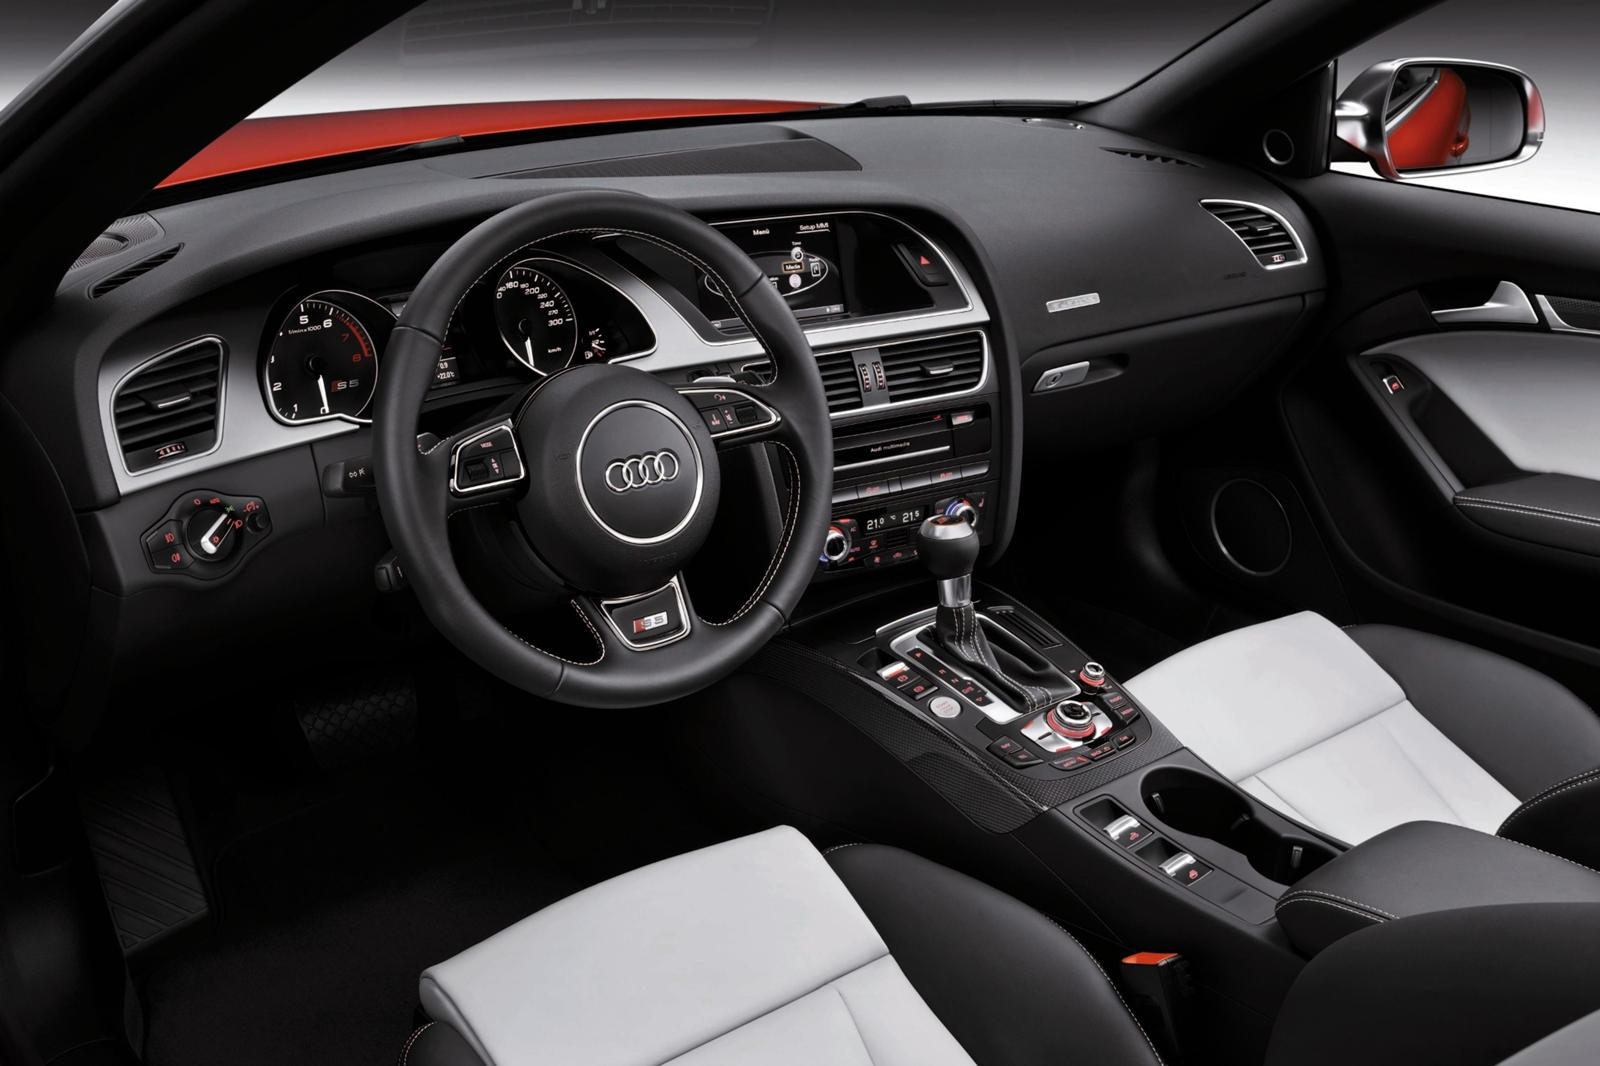 2017 Audi S5 Convertible Dashboard